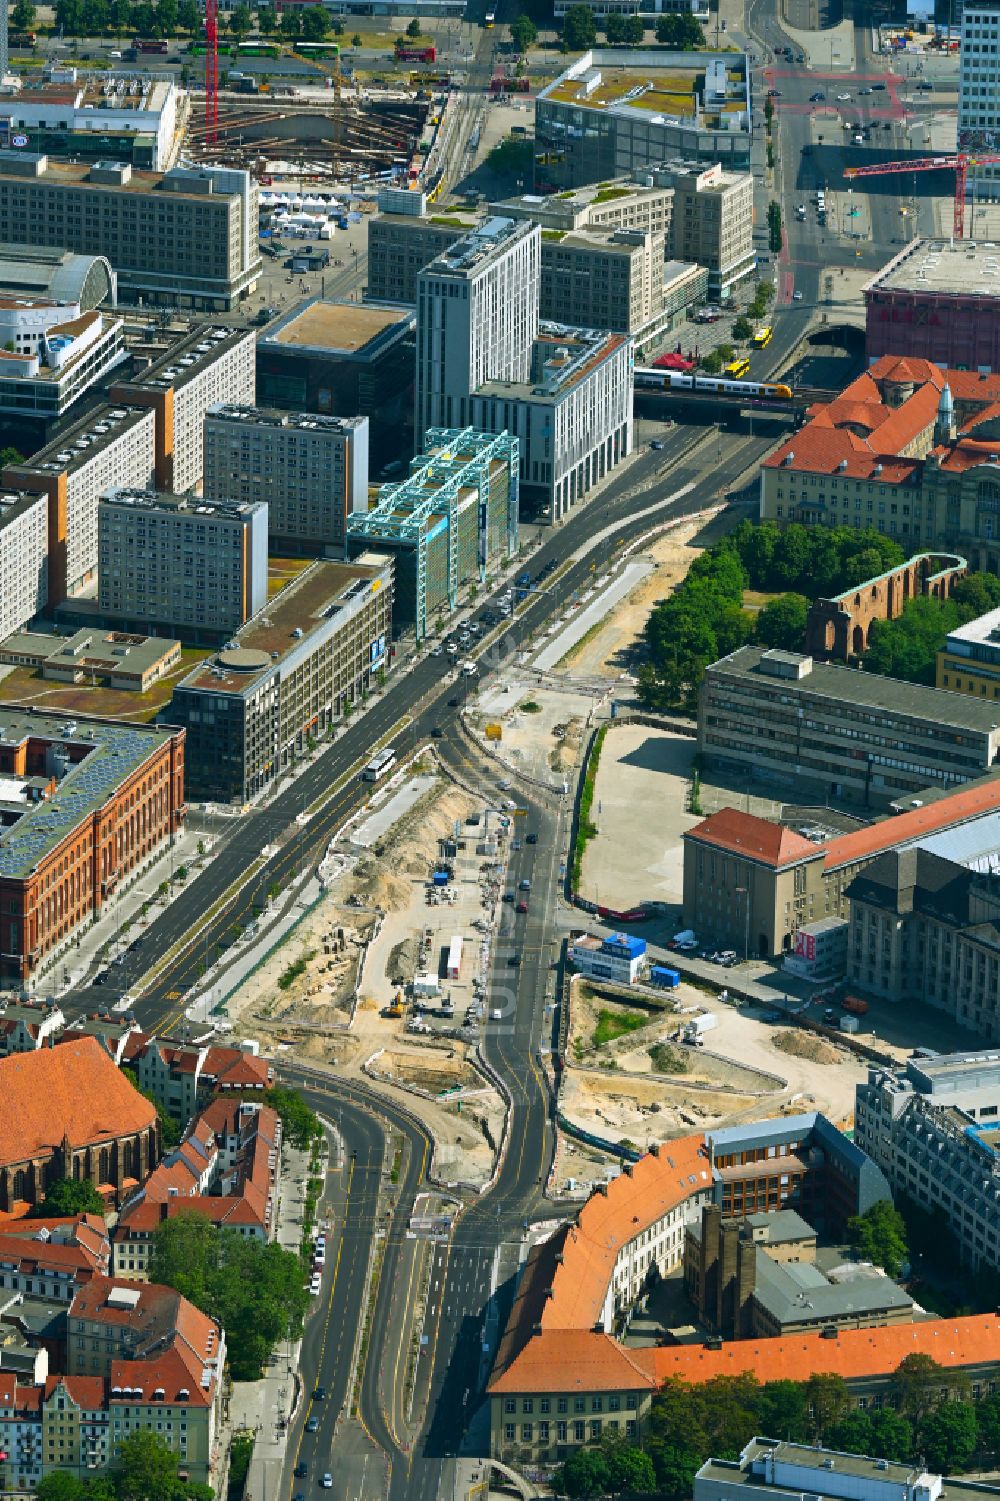 Luftbild Berlin - Baustelle mit Erschließungs - und Aufschüttungs- Arbeiten am Molkenmarkt entlang der Grunerstraße im Ortsteil Mitte in Berlin, Deutschland